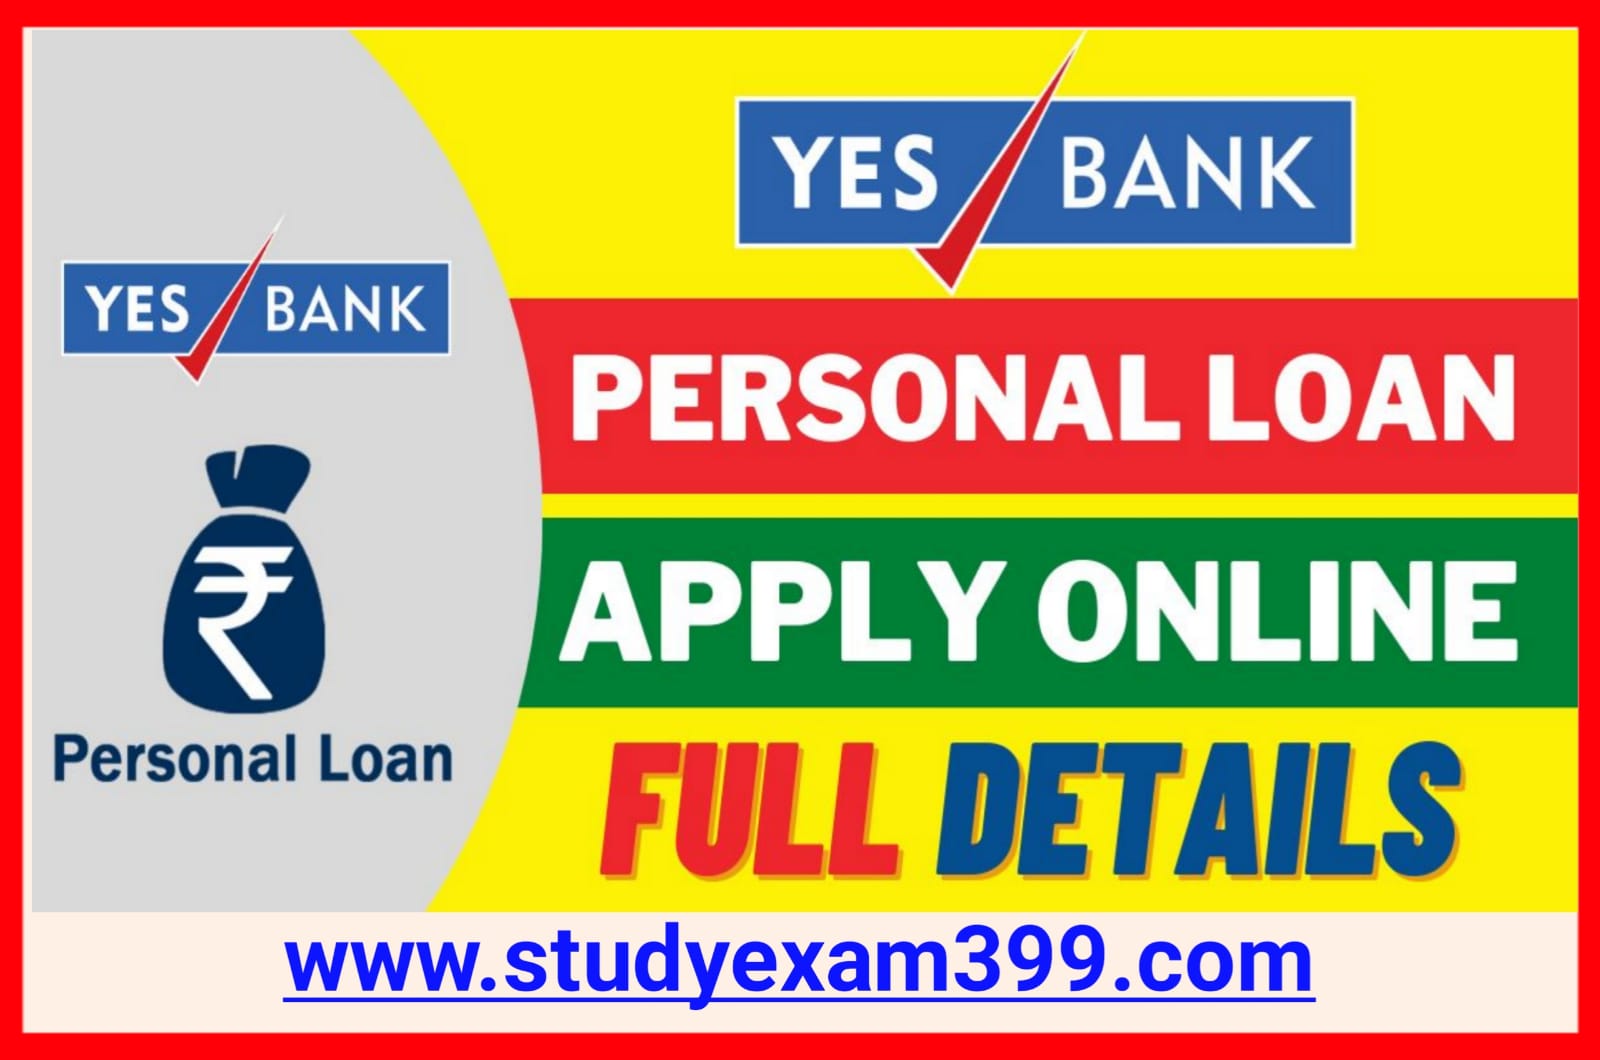 Yes Bank Personal Loan Apply Best Process - यस बैंक पर्सनल लोन के लिए सिर्फ 5 मिनट में ₹50000 के लिए आवेदन करें पाय बैंक खाते में तुरंत पैसे